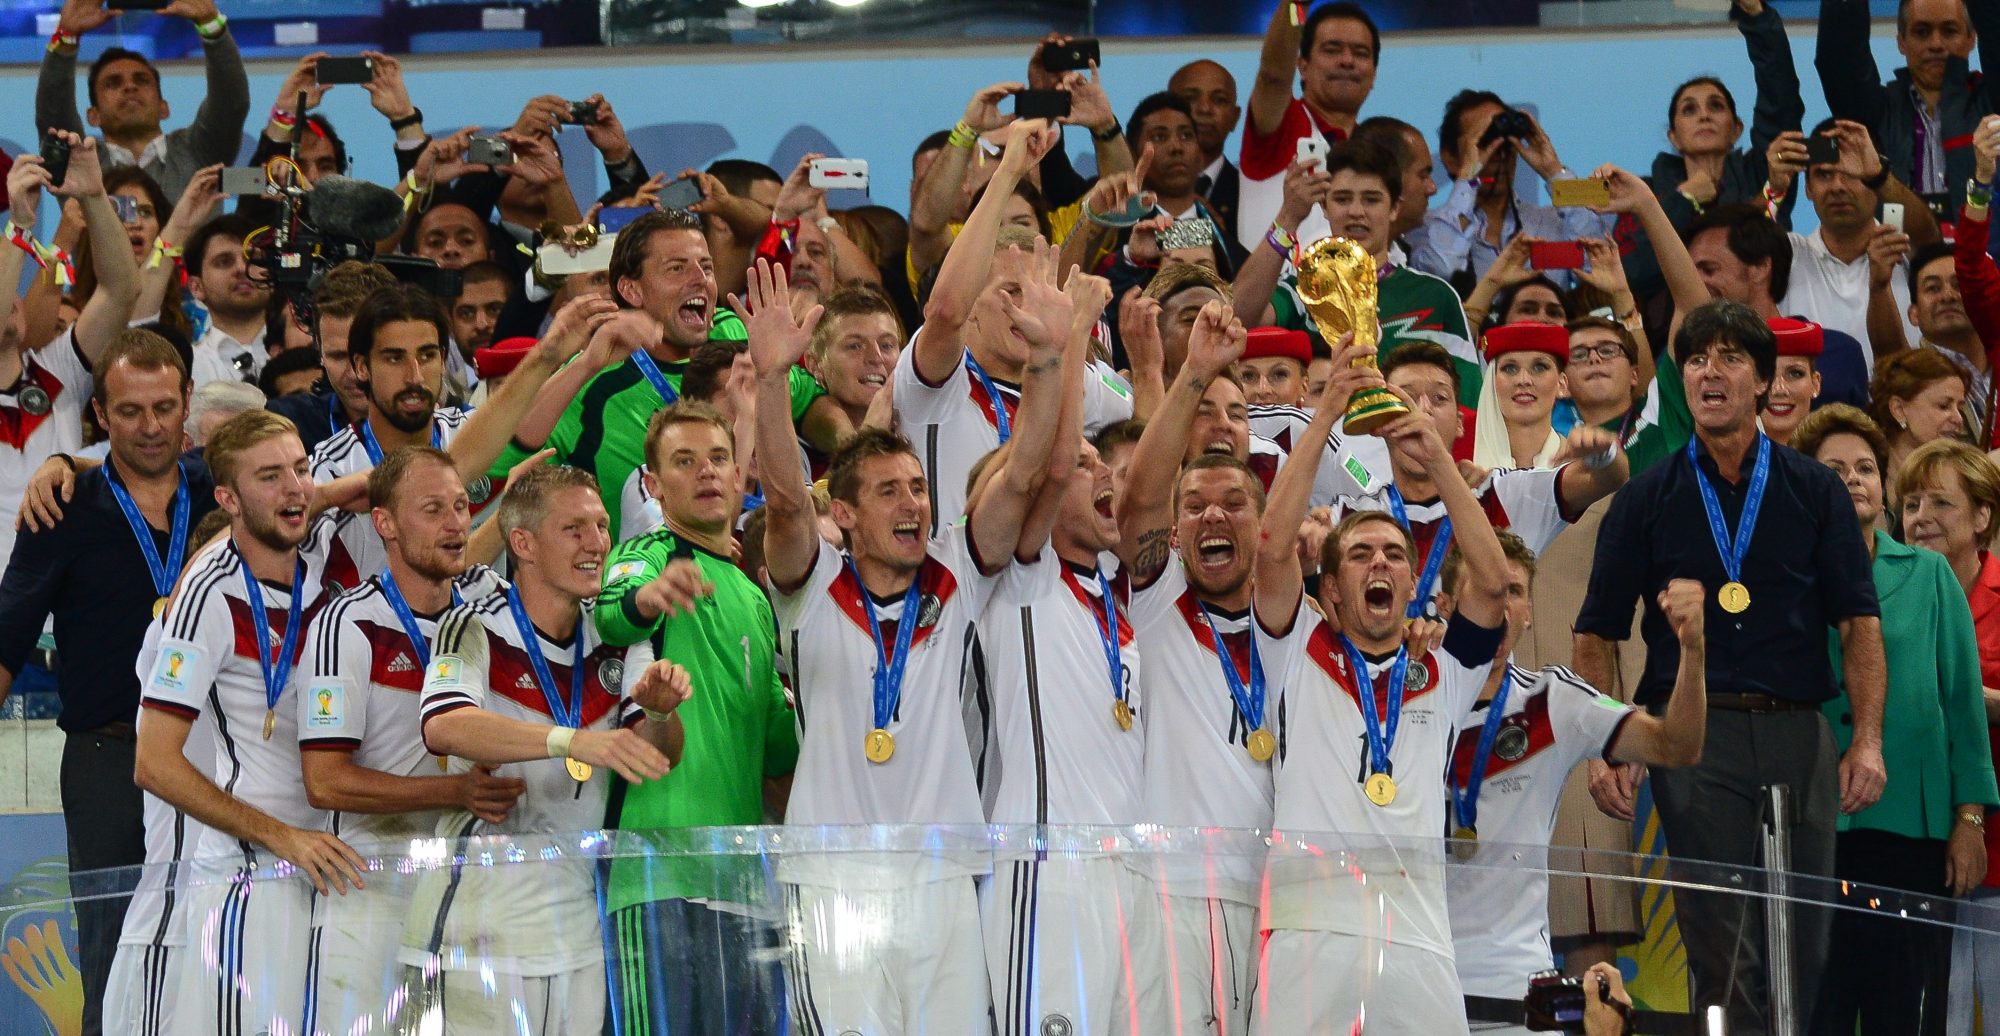 A Alemanha conquistou em 2014 o 4º título mundial depois de 1954, 1974 e 1990.